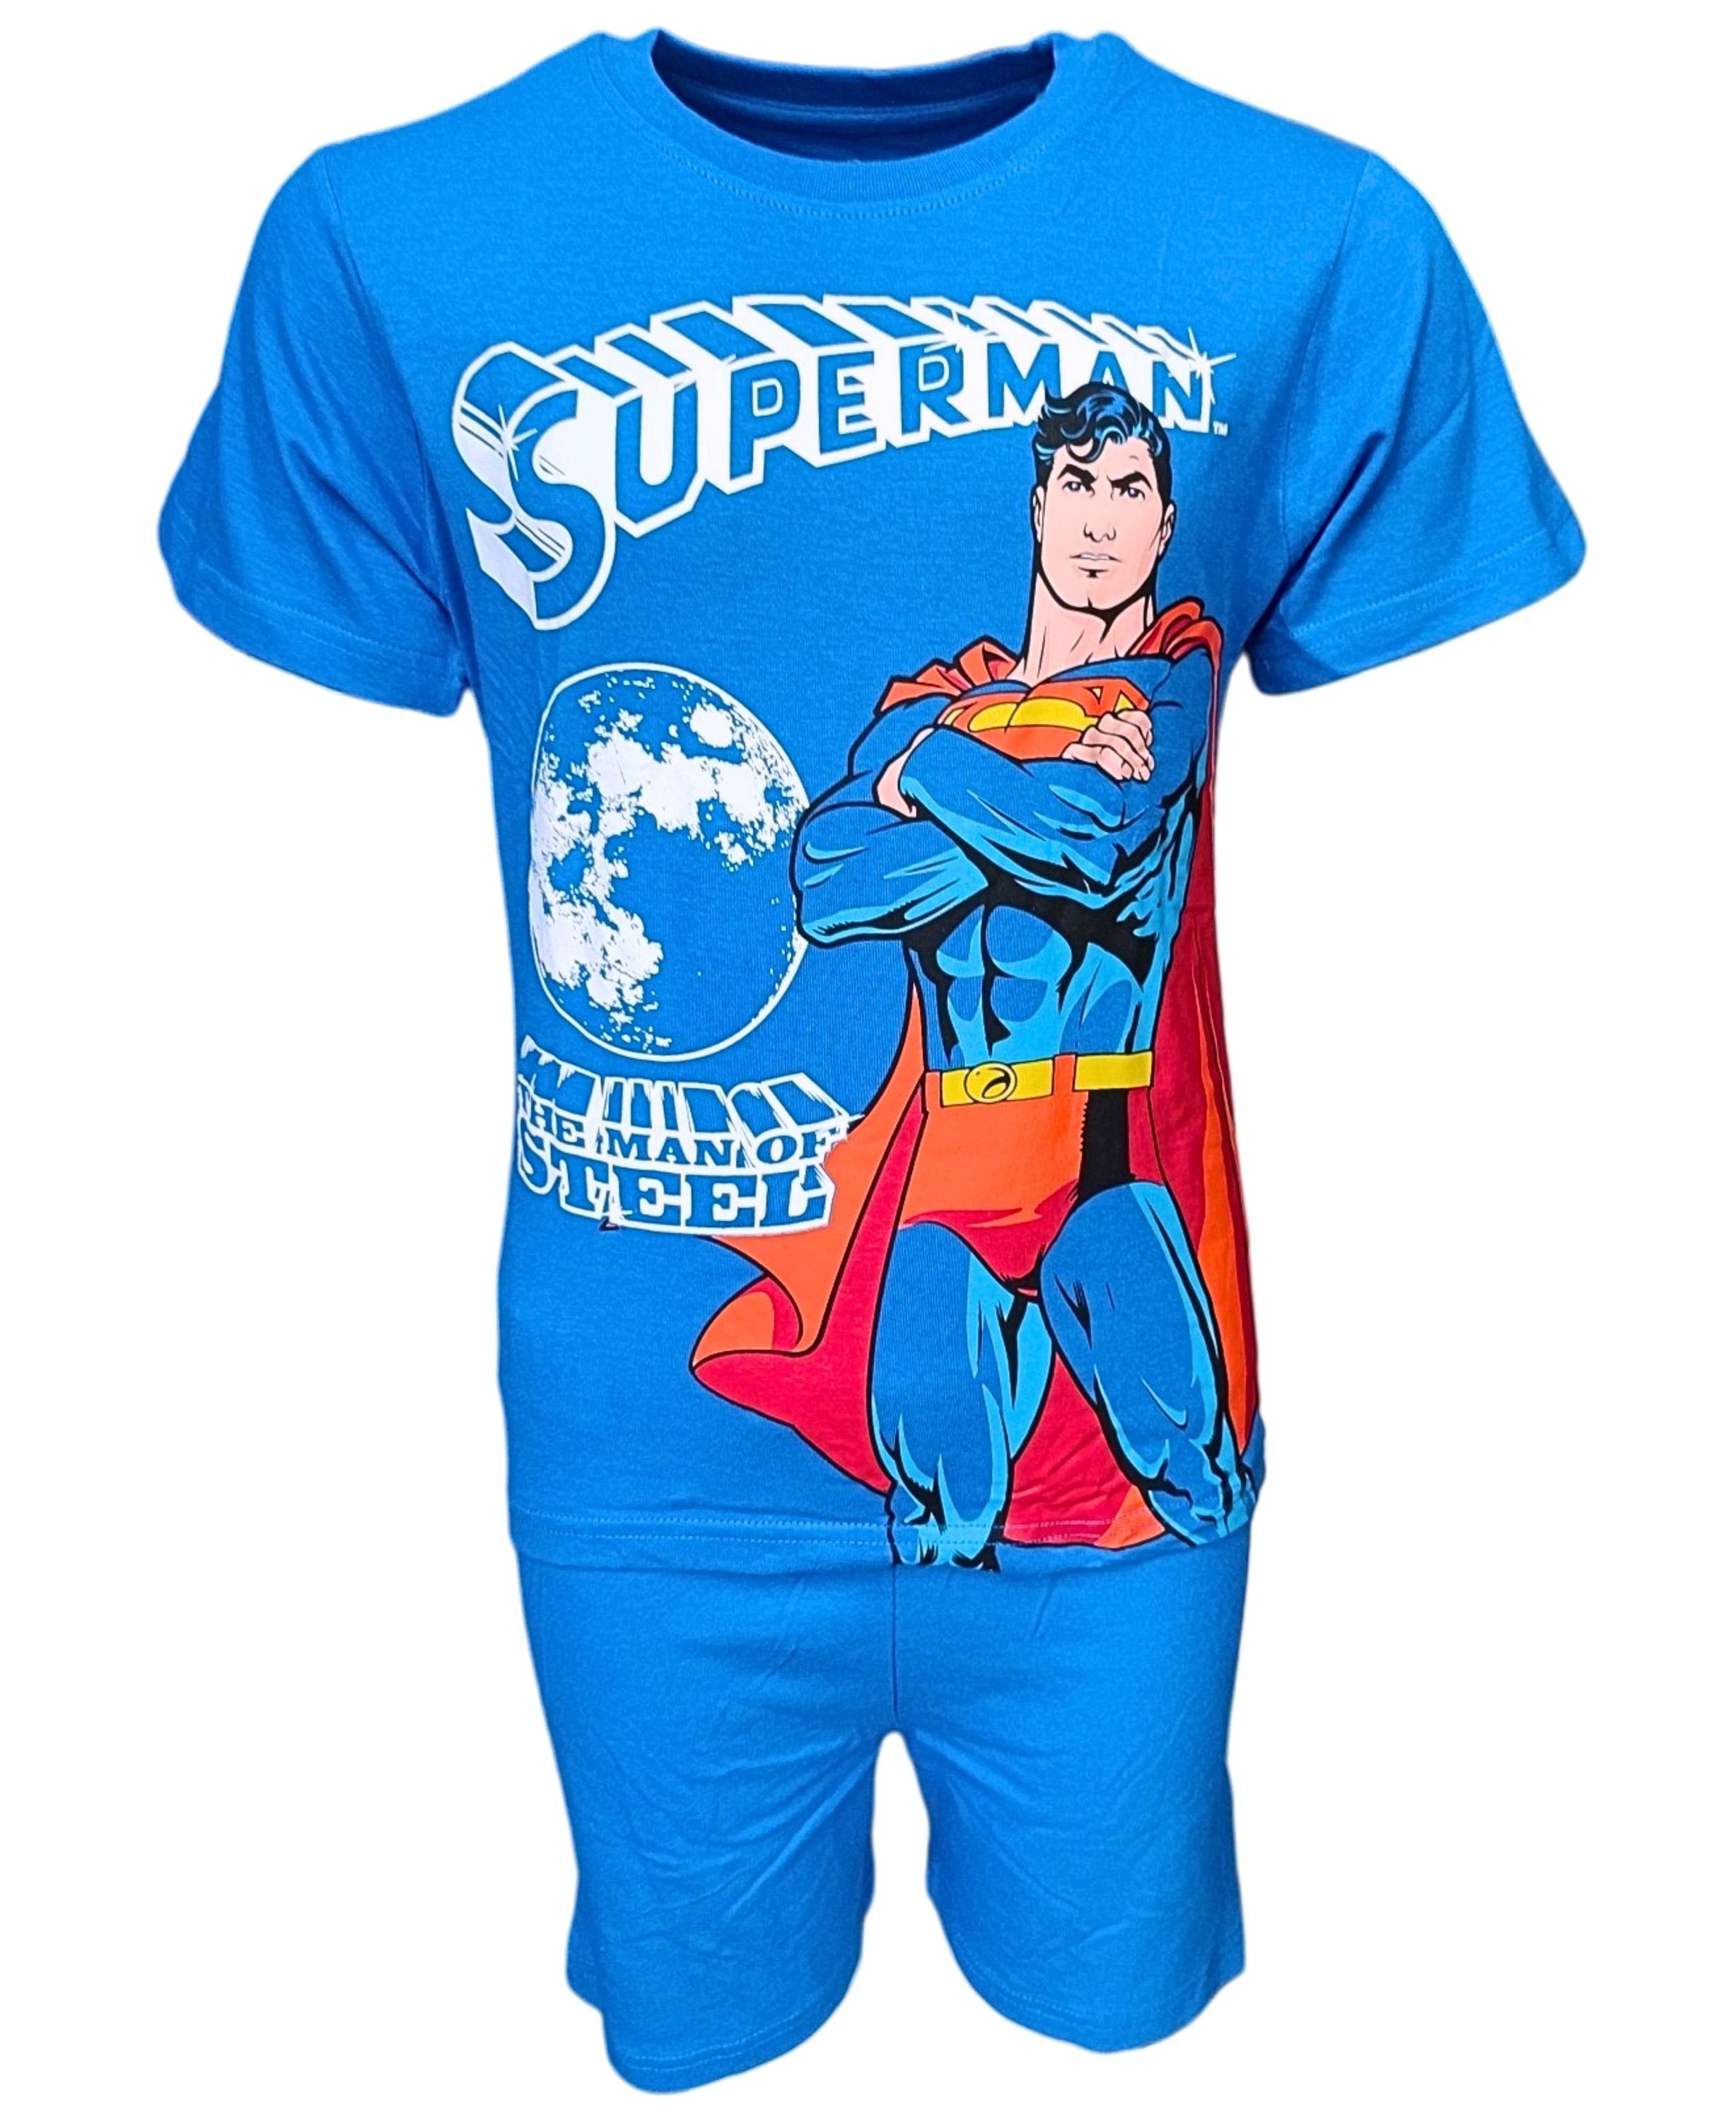 Superman Schlafanzug THE MAN OF STEEL (2 tlg) Jungen Shorty aus Baumwolle Gr. 104 - 134 cm